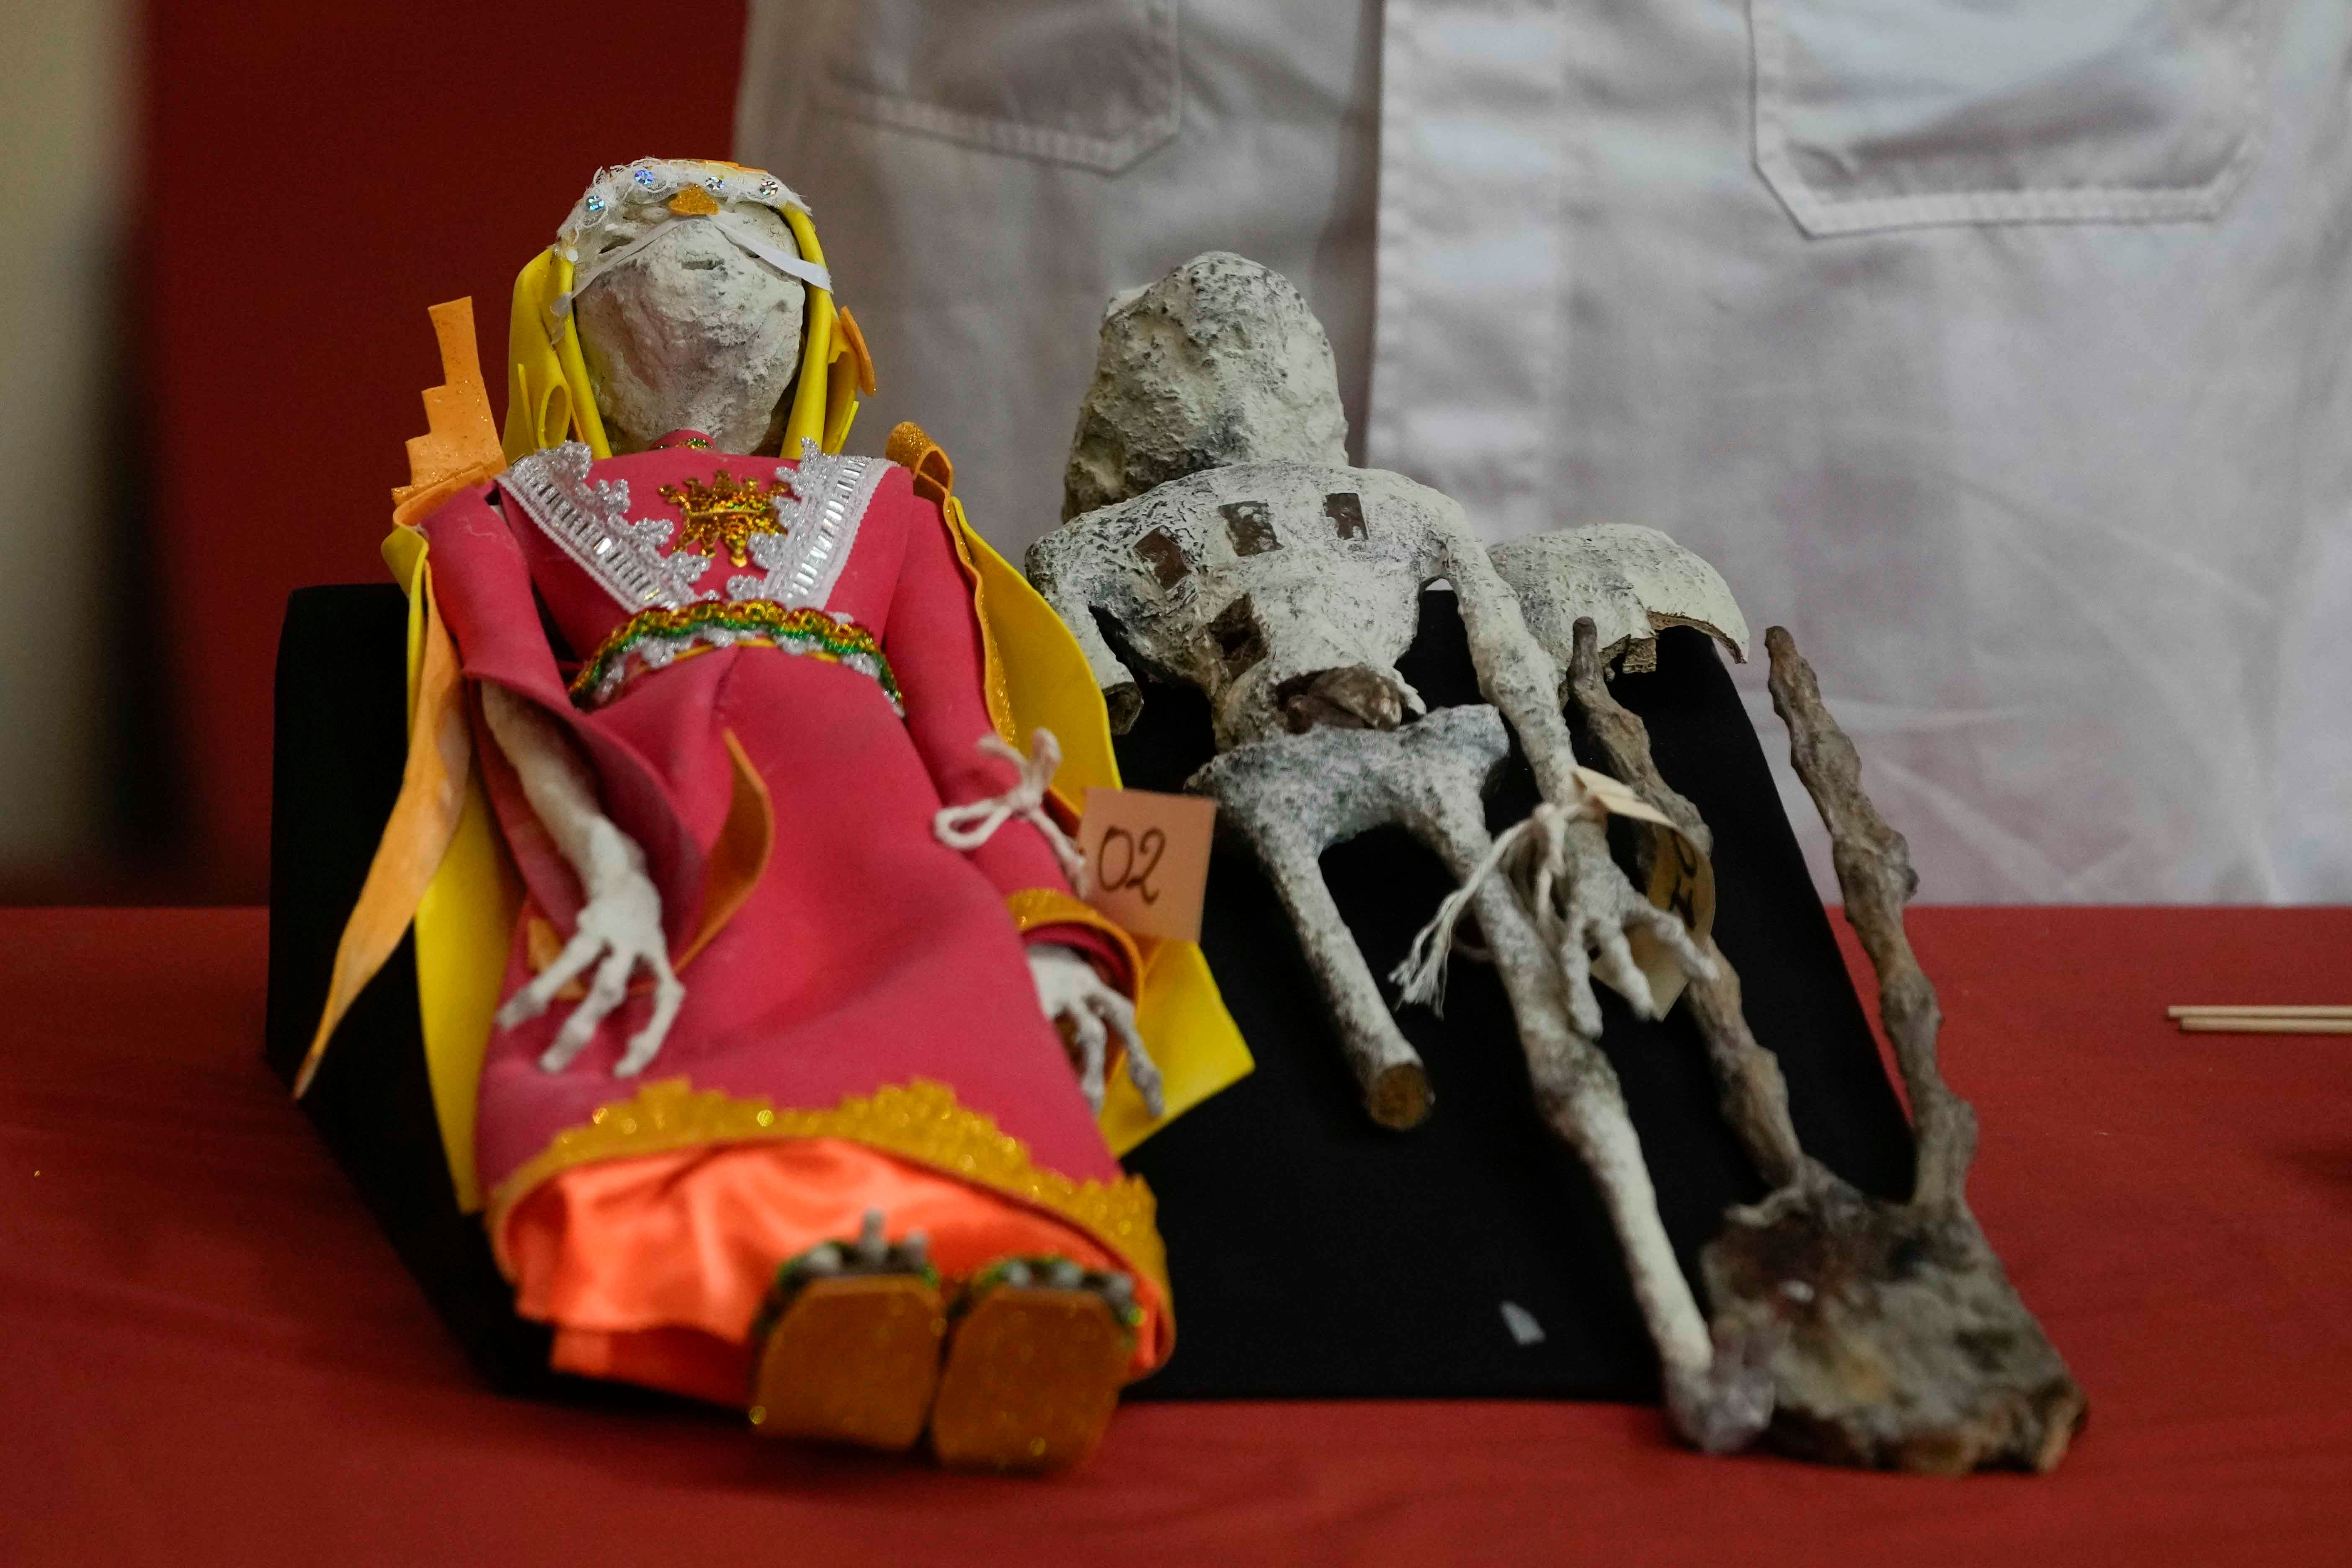 Auf einem Tisch mit roter Tischdecke sind zwei humanoide Puppen aus Papier, Leim sowie menschlichen und tierischen Knochen ausgestellt.